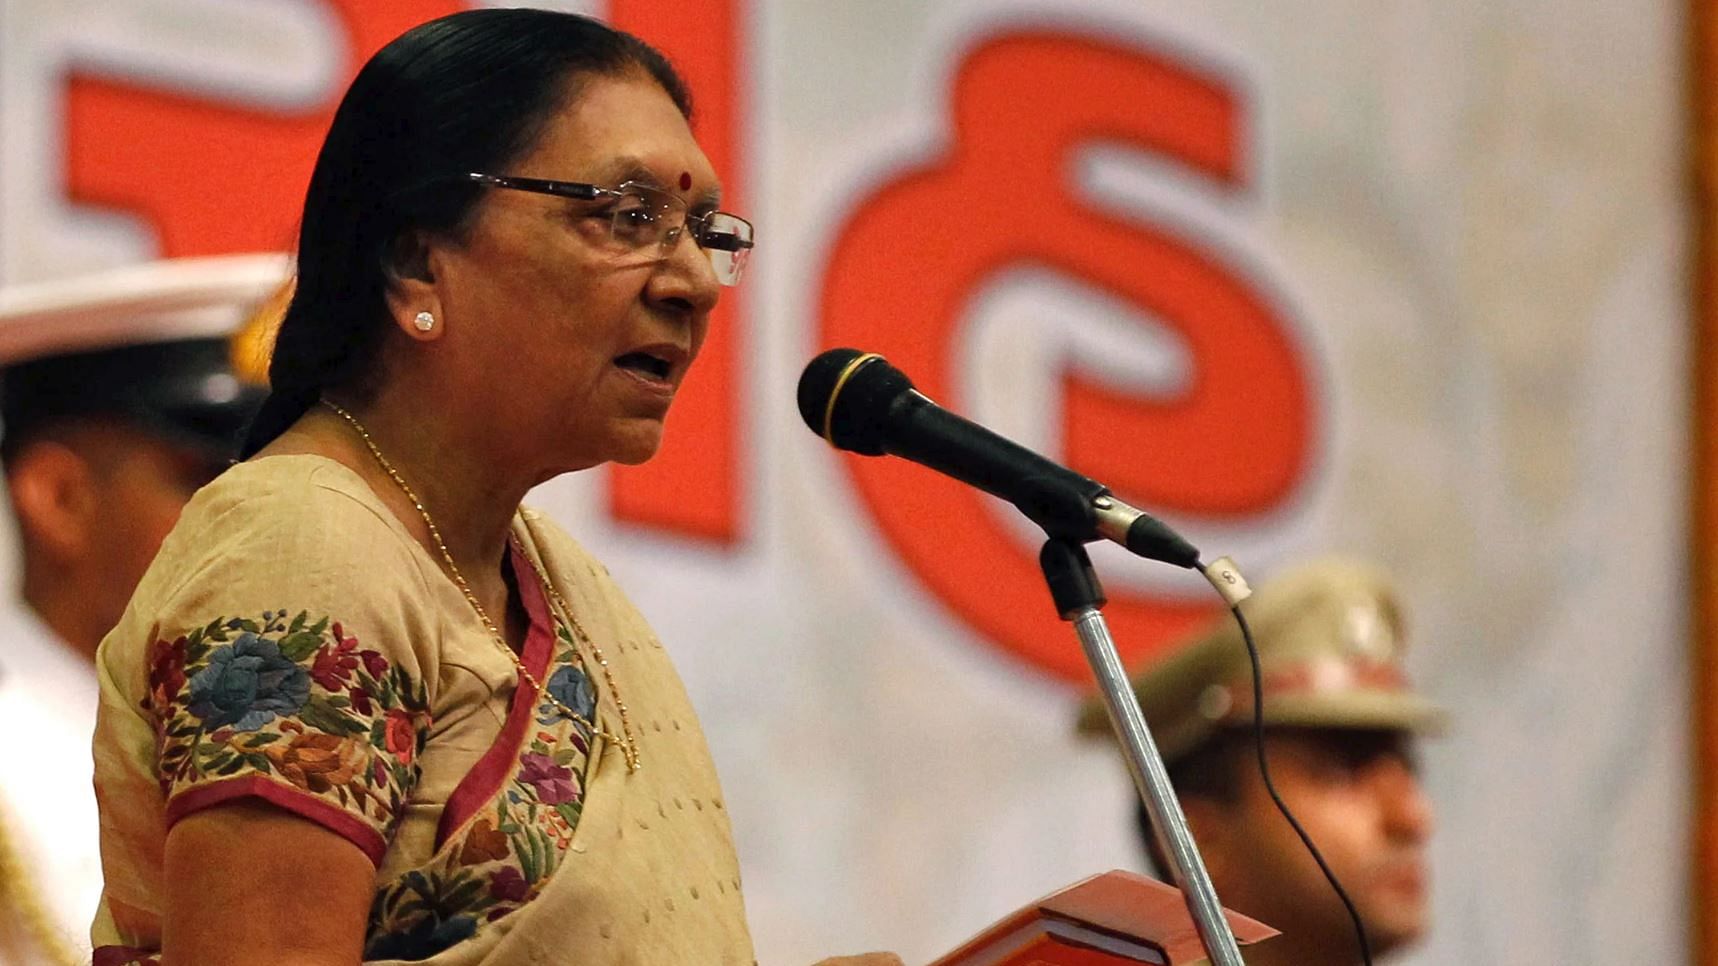 मध्य प्रदेश की गवर्नर और गुजरात की पूर्व मुख्यमंत्री आनंदीबेन पटेल ने महिलाओं पर विवादित बयान दिया है